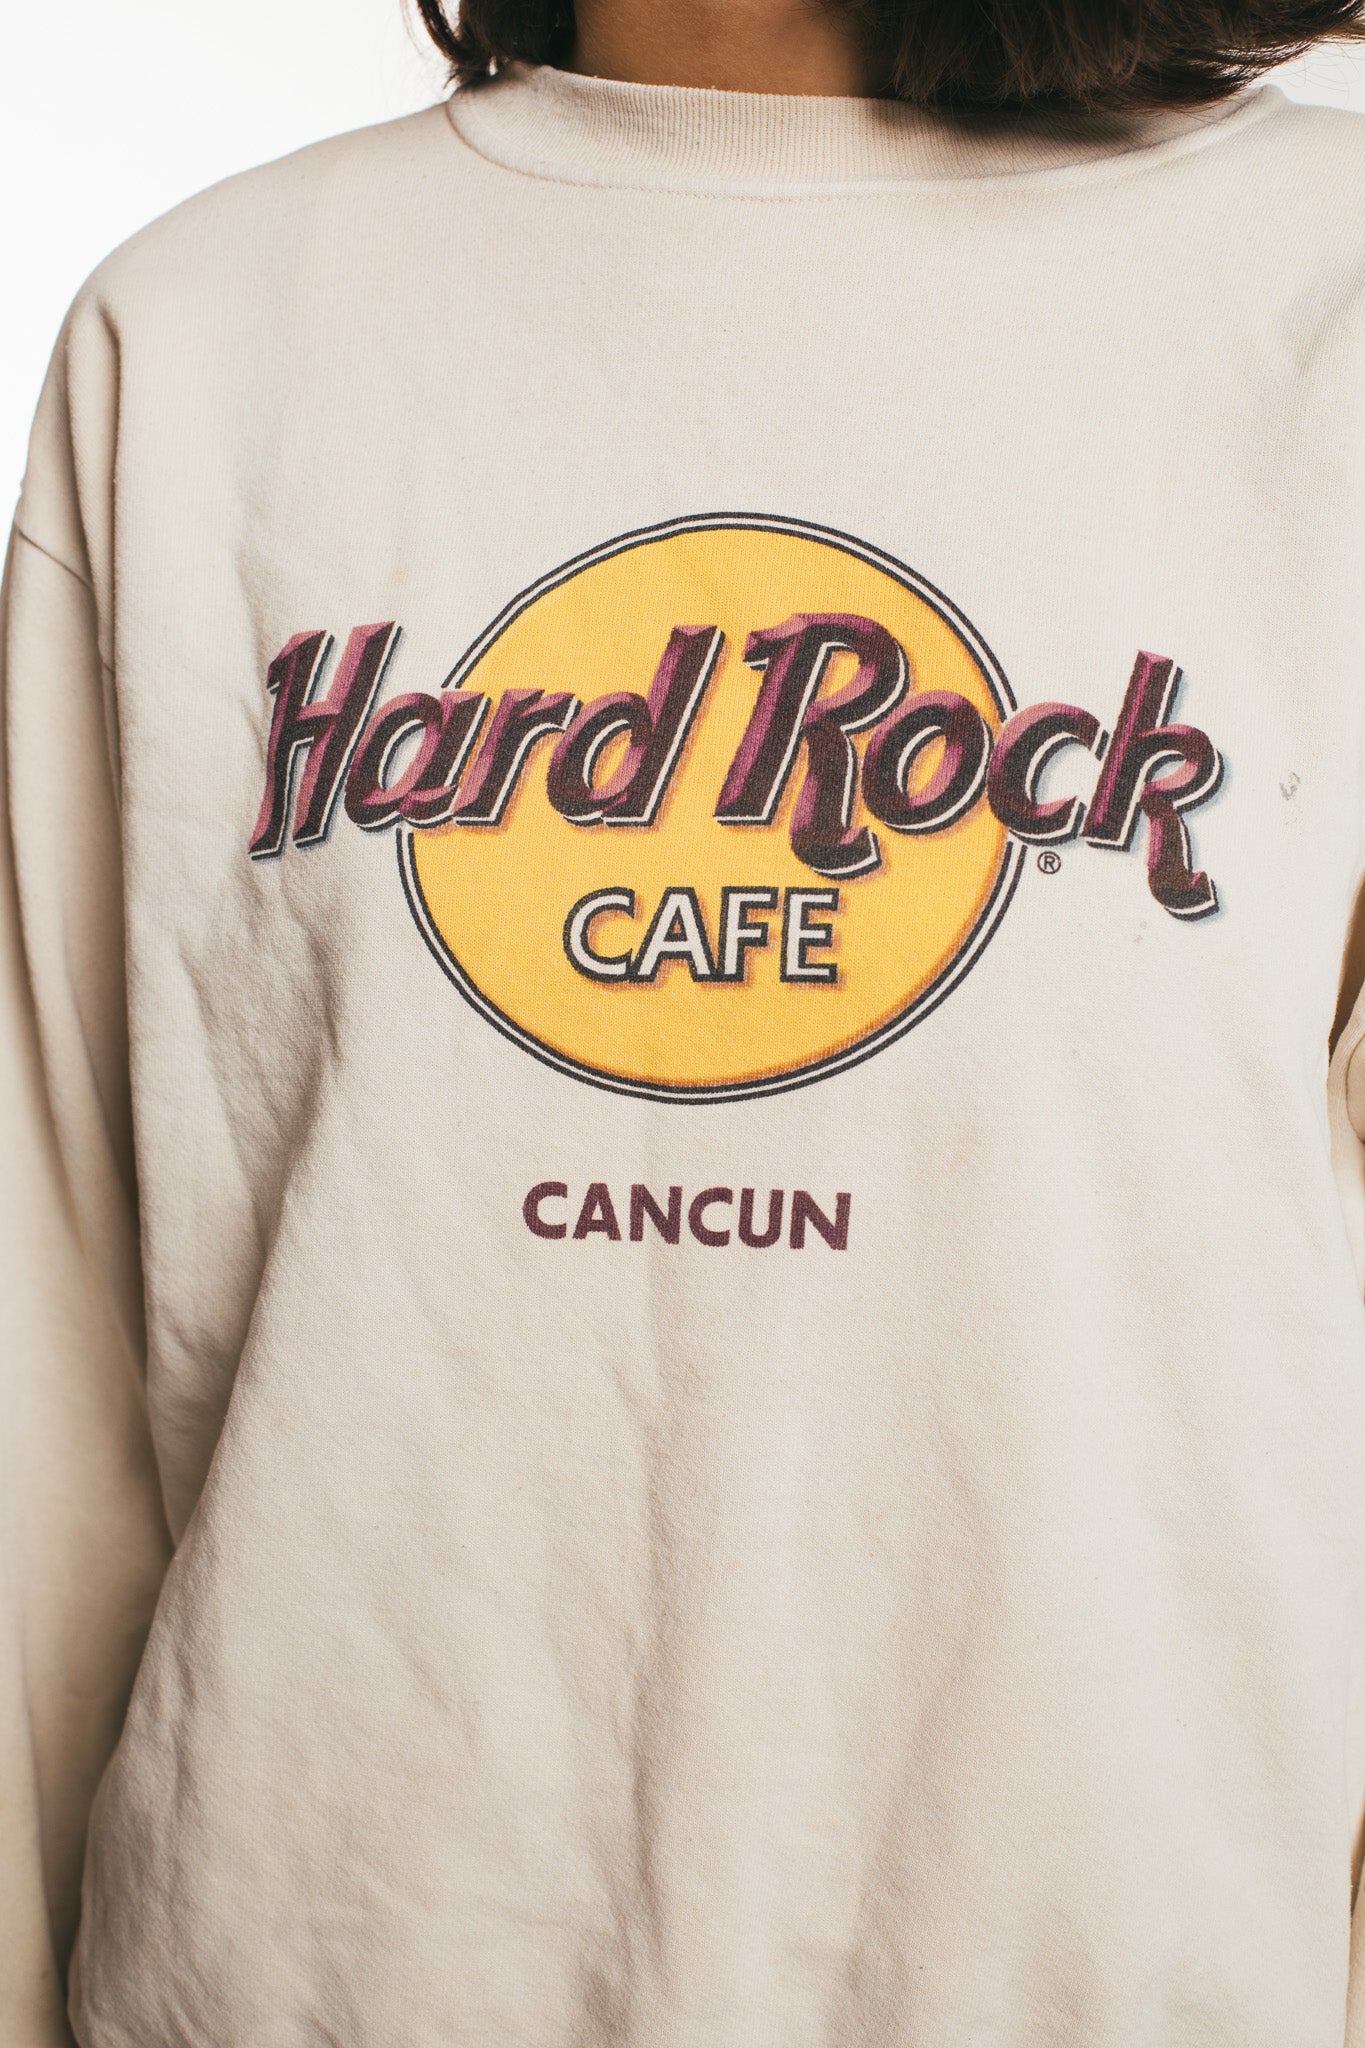 Hard Rock Cafe - Sweatshirt